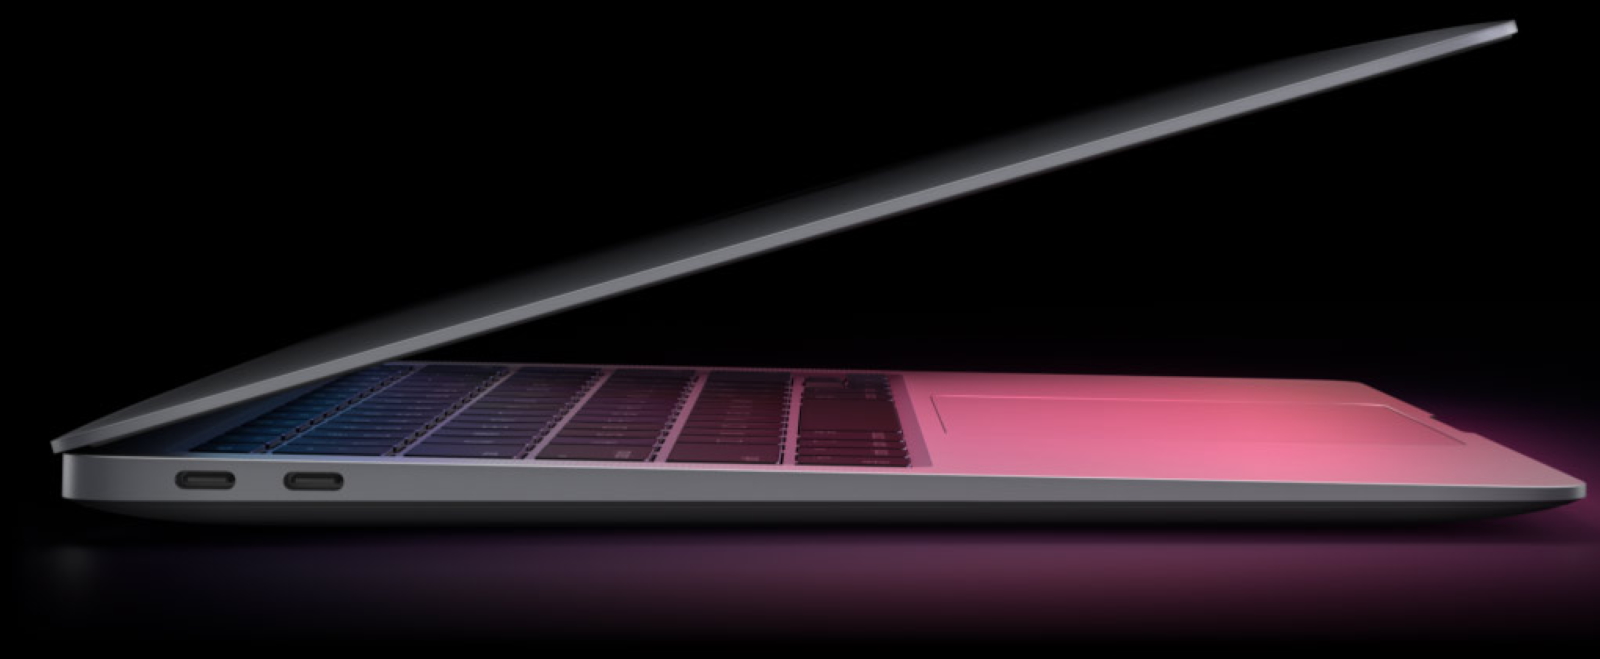 Le MacBook Air 2020 ne change pas de design, mais se bonifie franchement grâce à sa nouvelle puce MA. © Apple